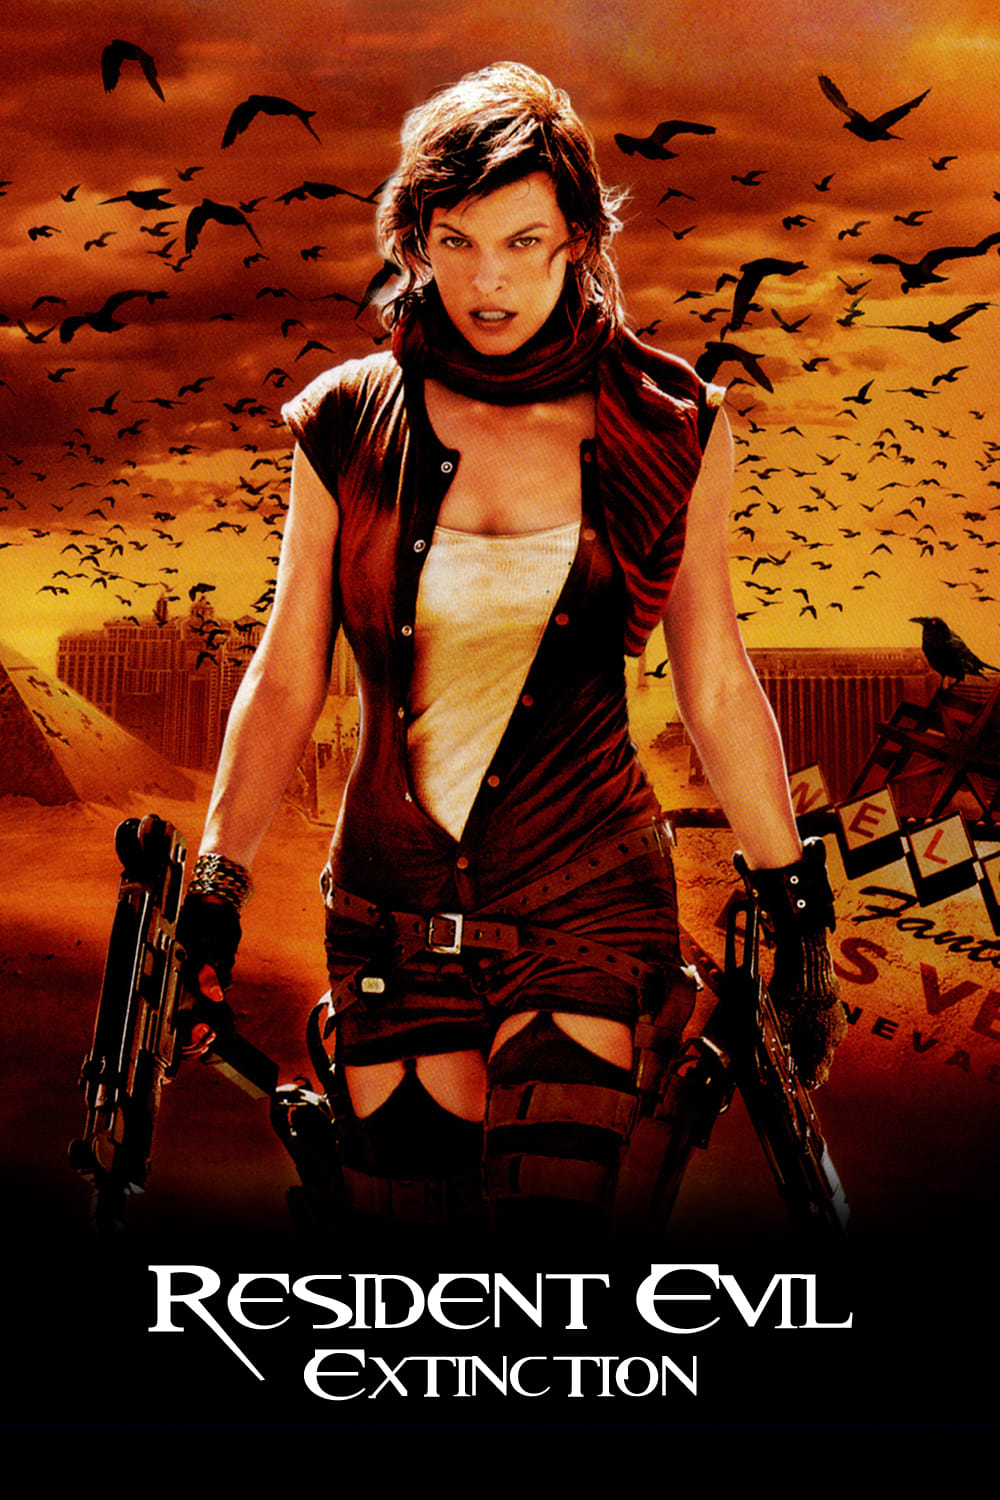 Resident evil 3: extinction 2007 គុណភាព 4k